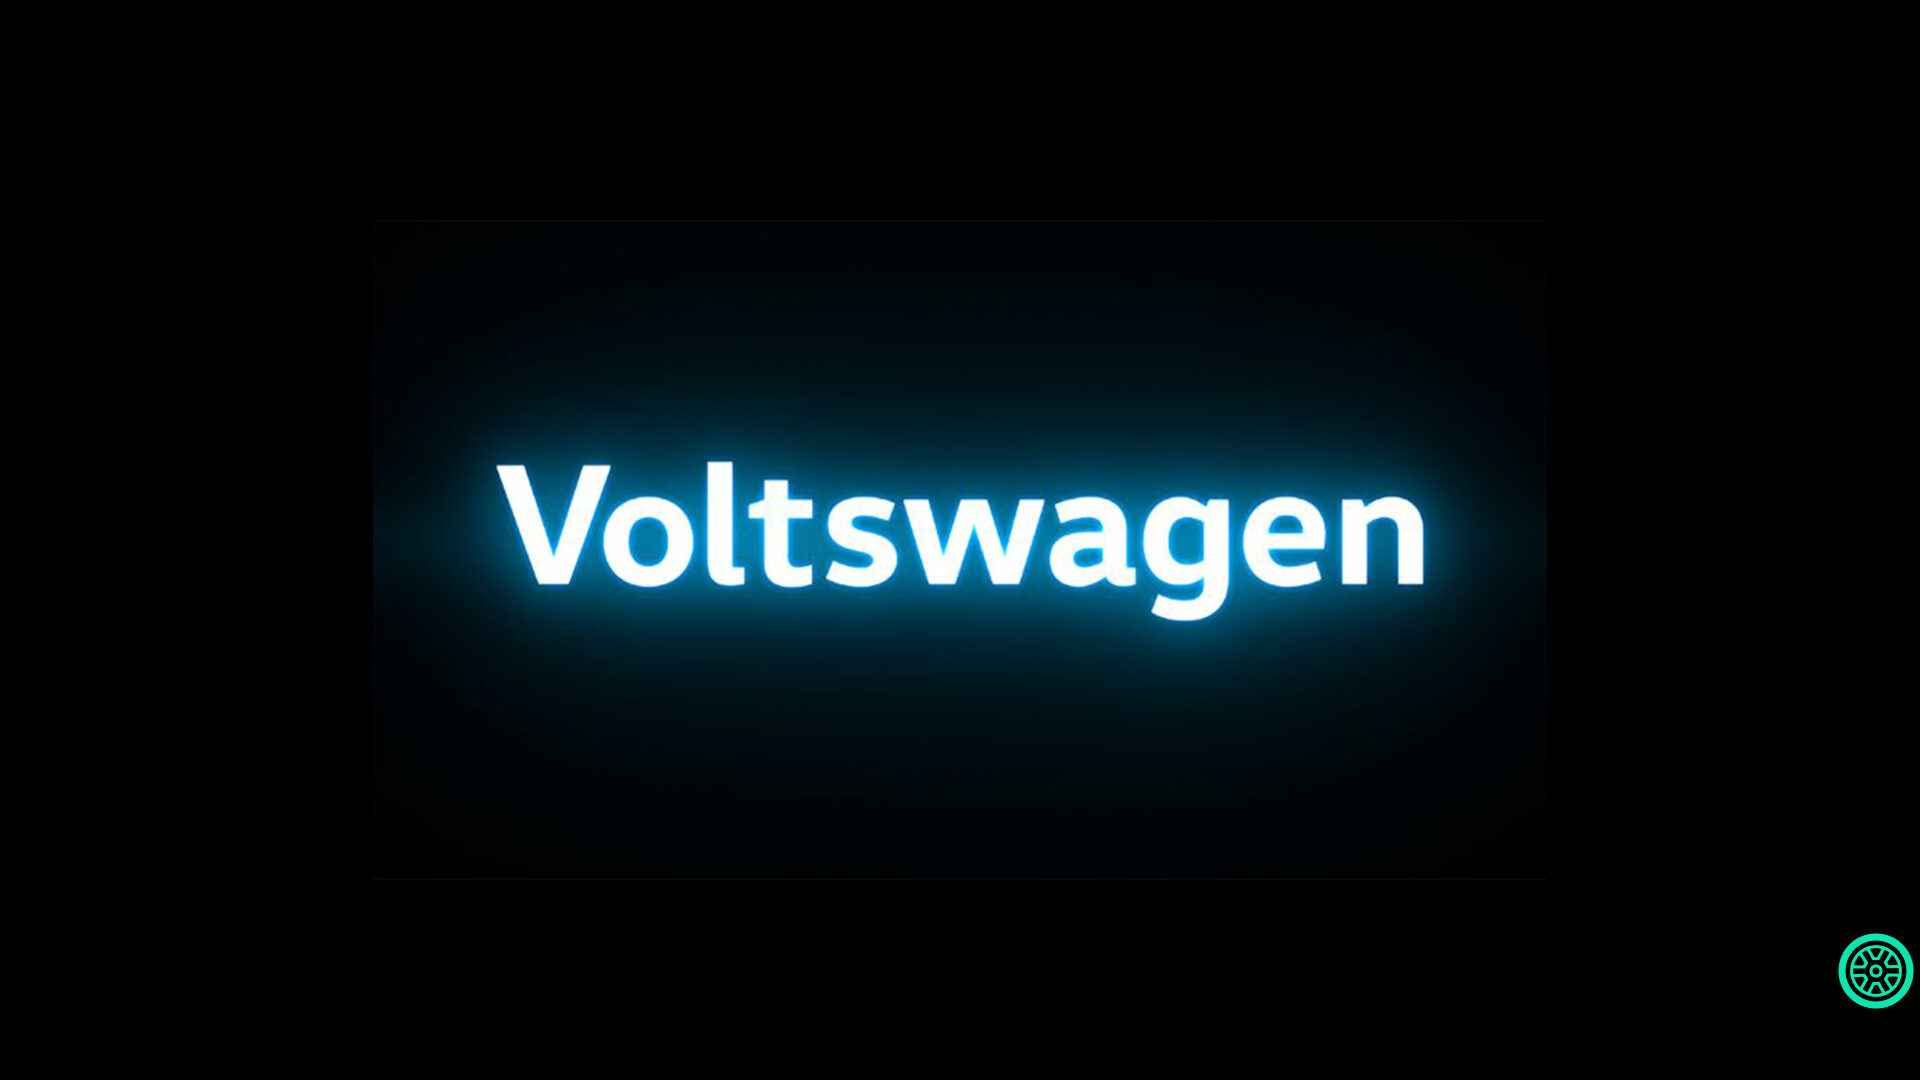 Hoşgeldin Voltswagen, hoşçakal Volkswagen 1